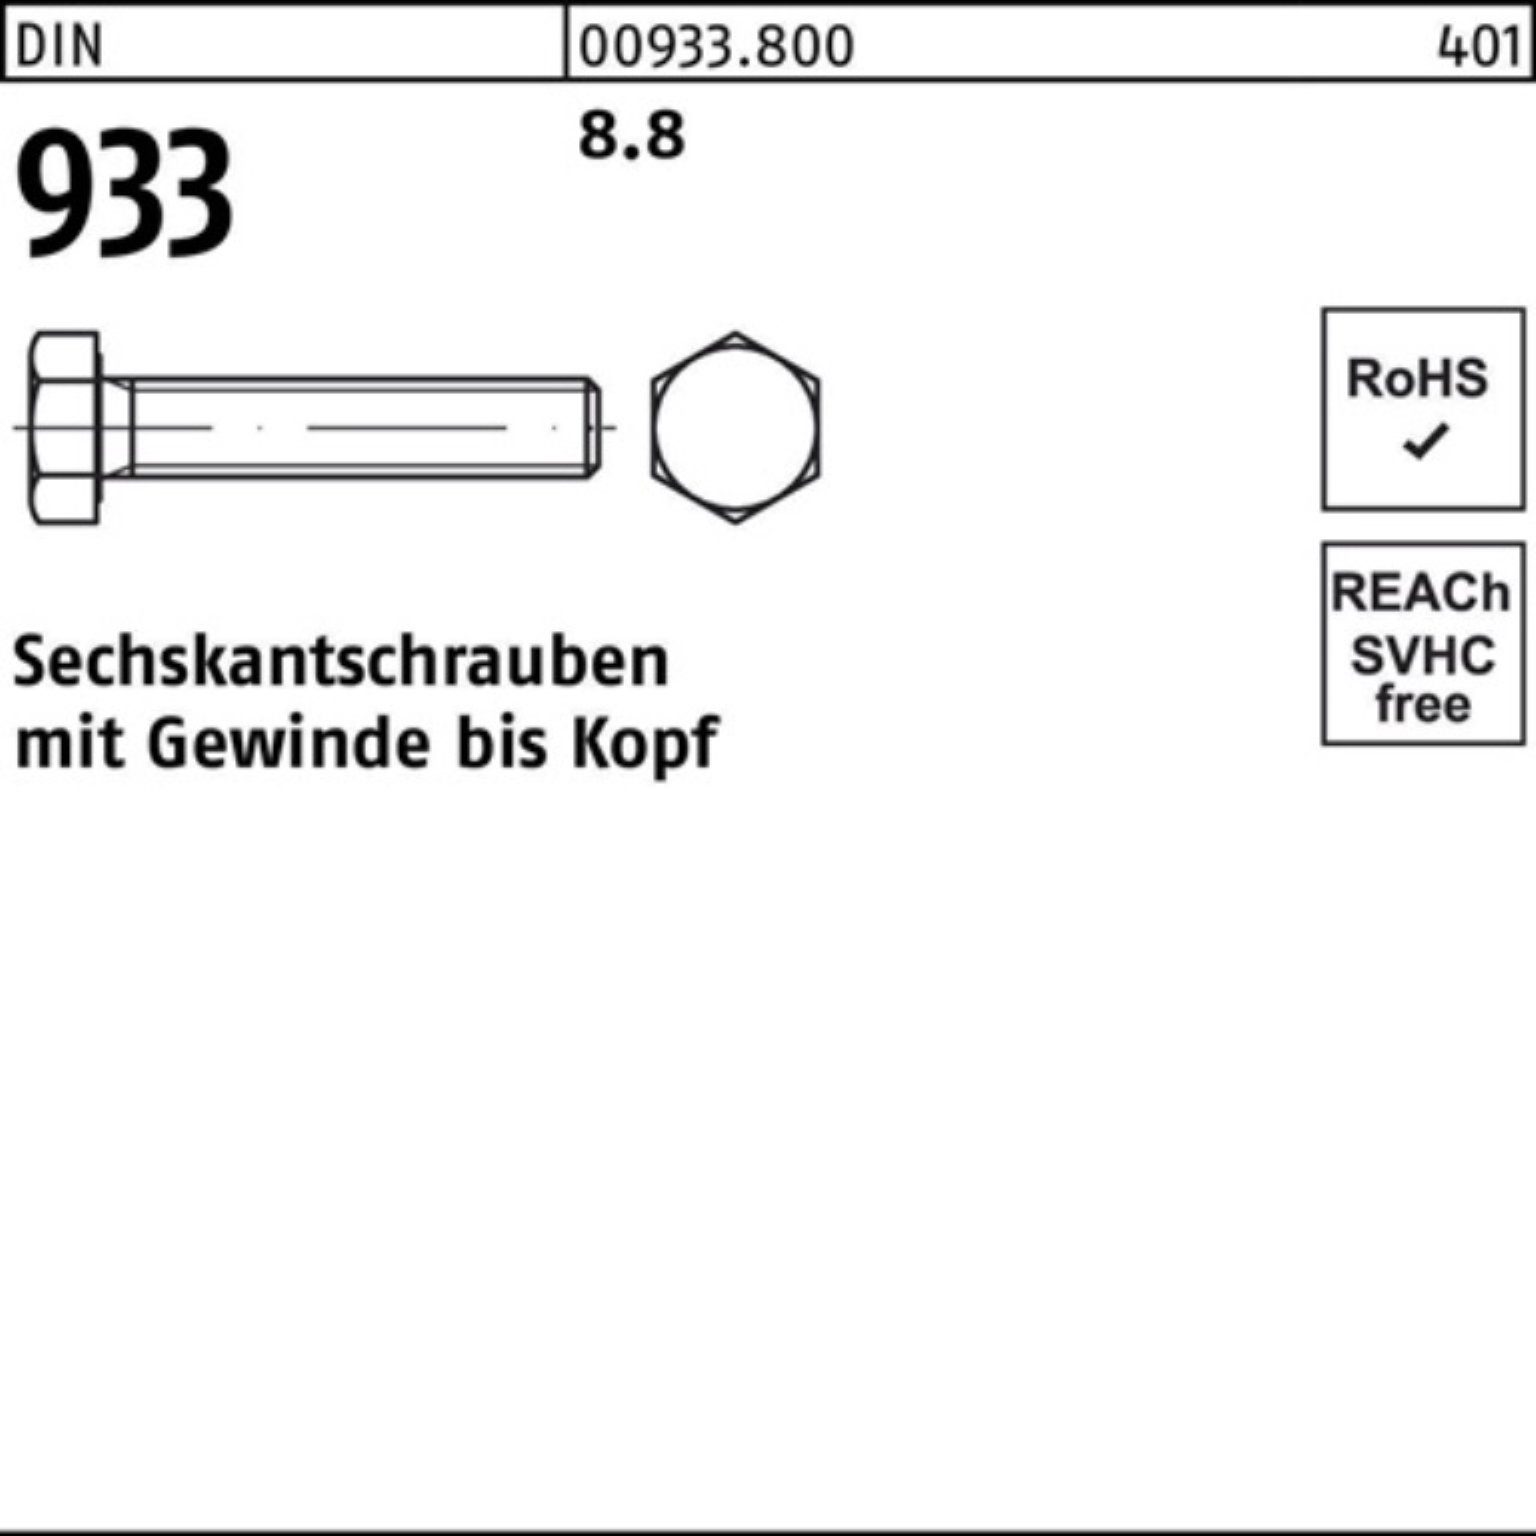 Reyher Sechskantschraube 100er 8.8 Stück DIN M24x VG Sechskantschraube 933 25 Pack DIN 933 40